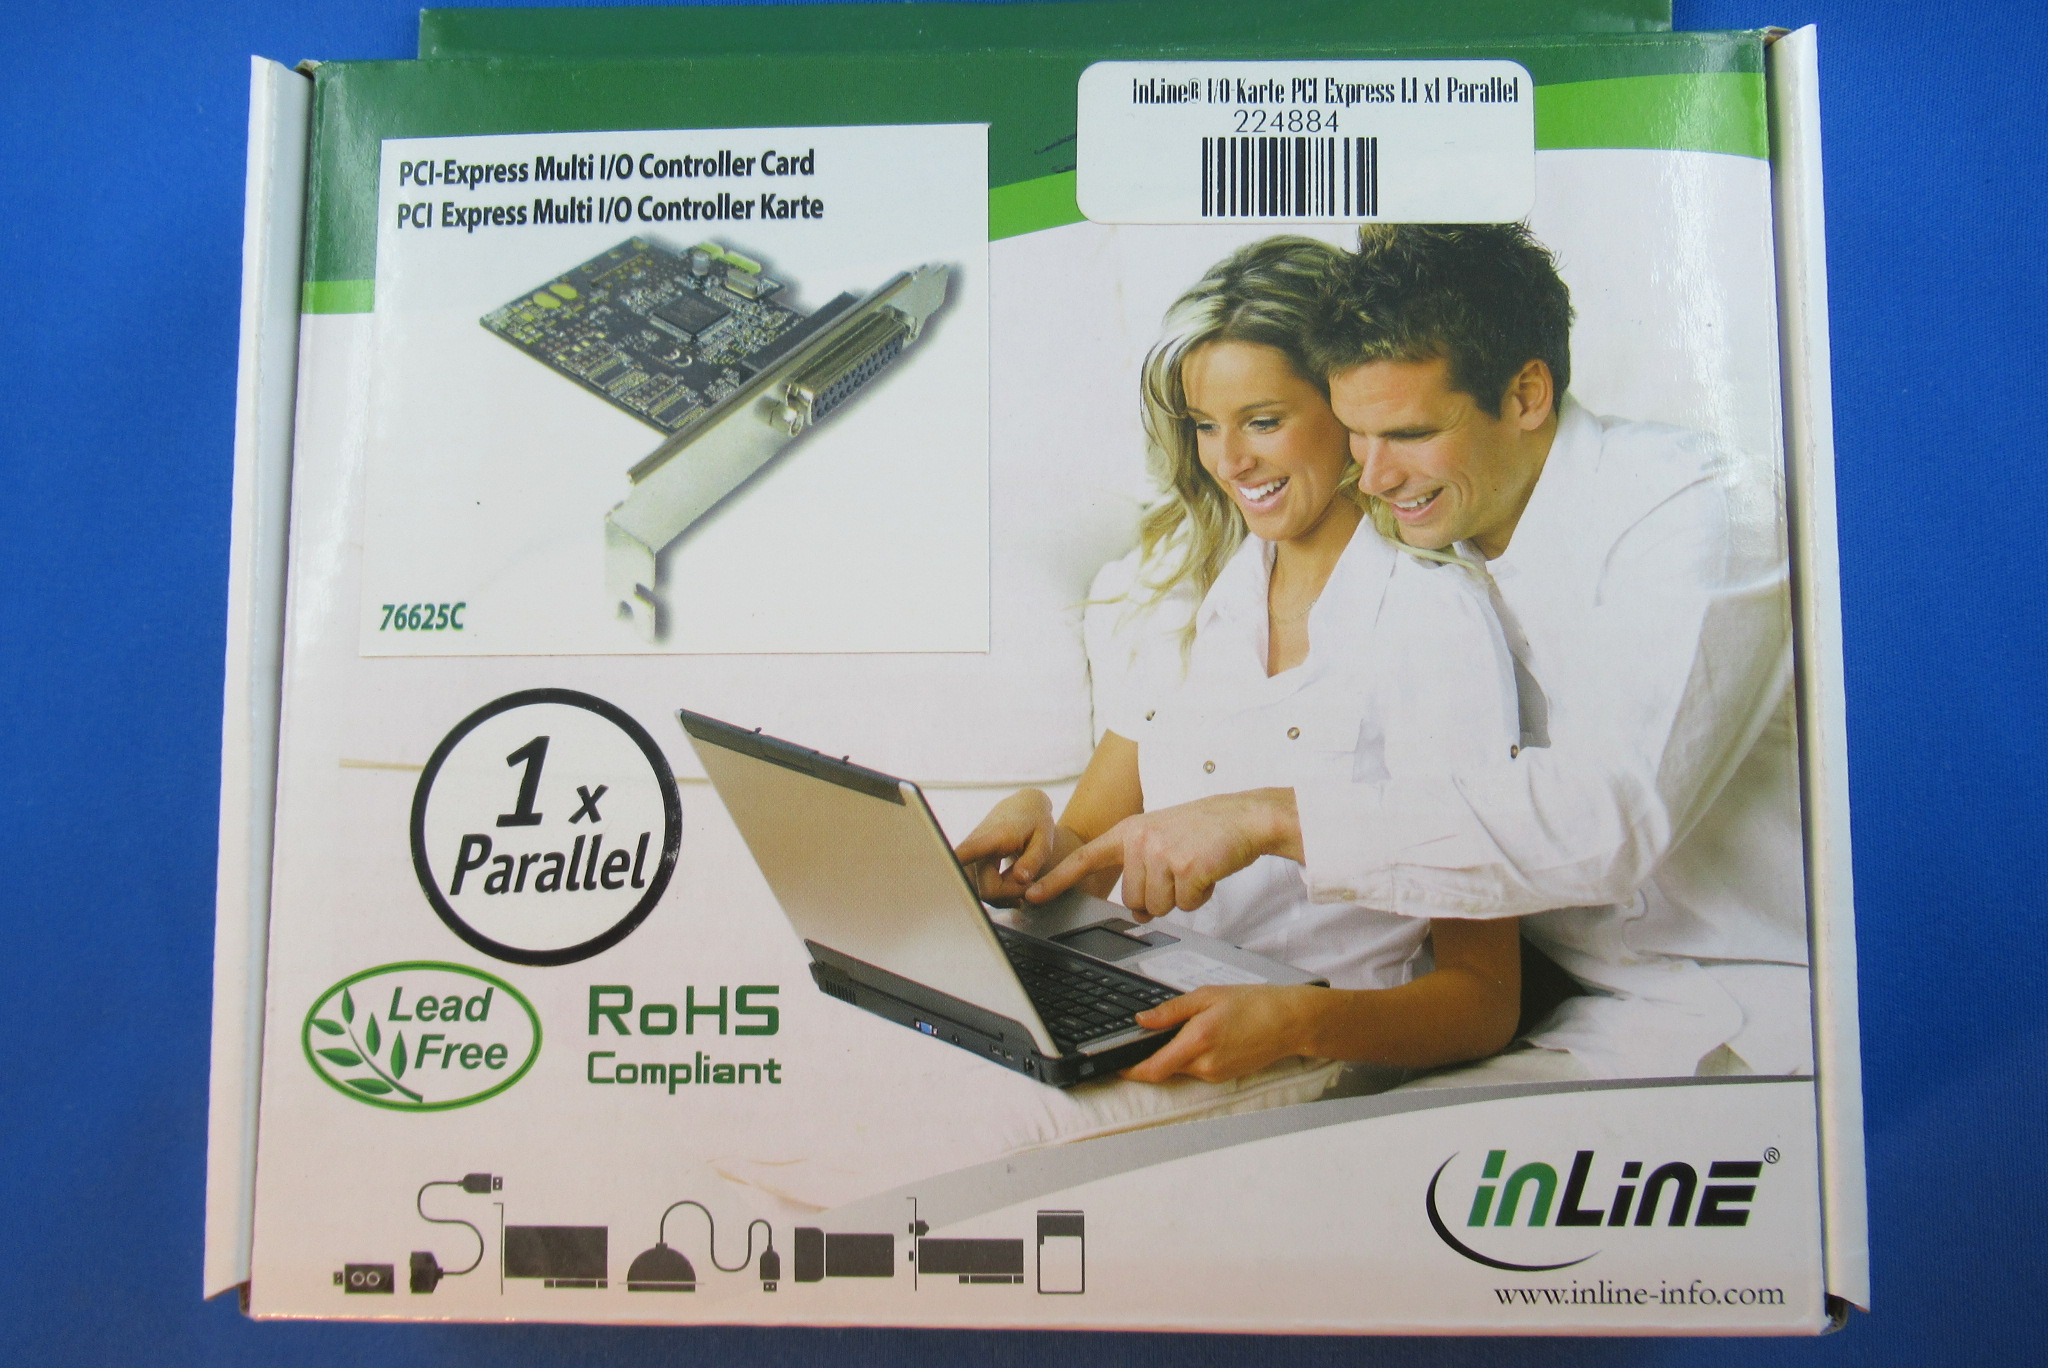 InLine® I/O-Karte PCI Express 1.1 x1 Parallel INTOS 76625C